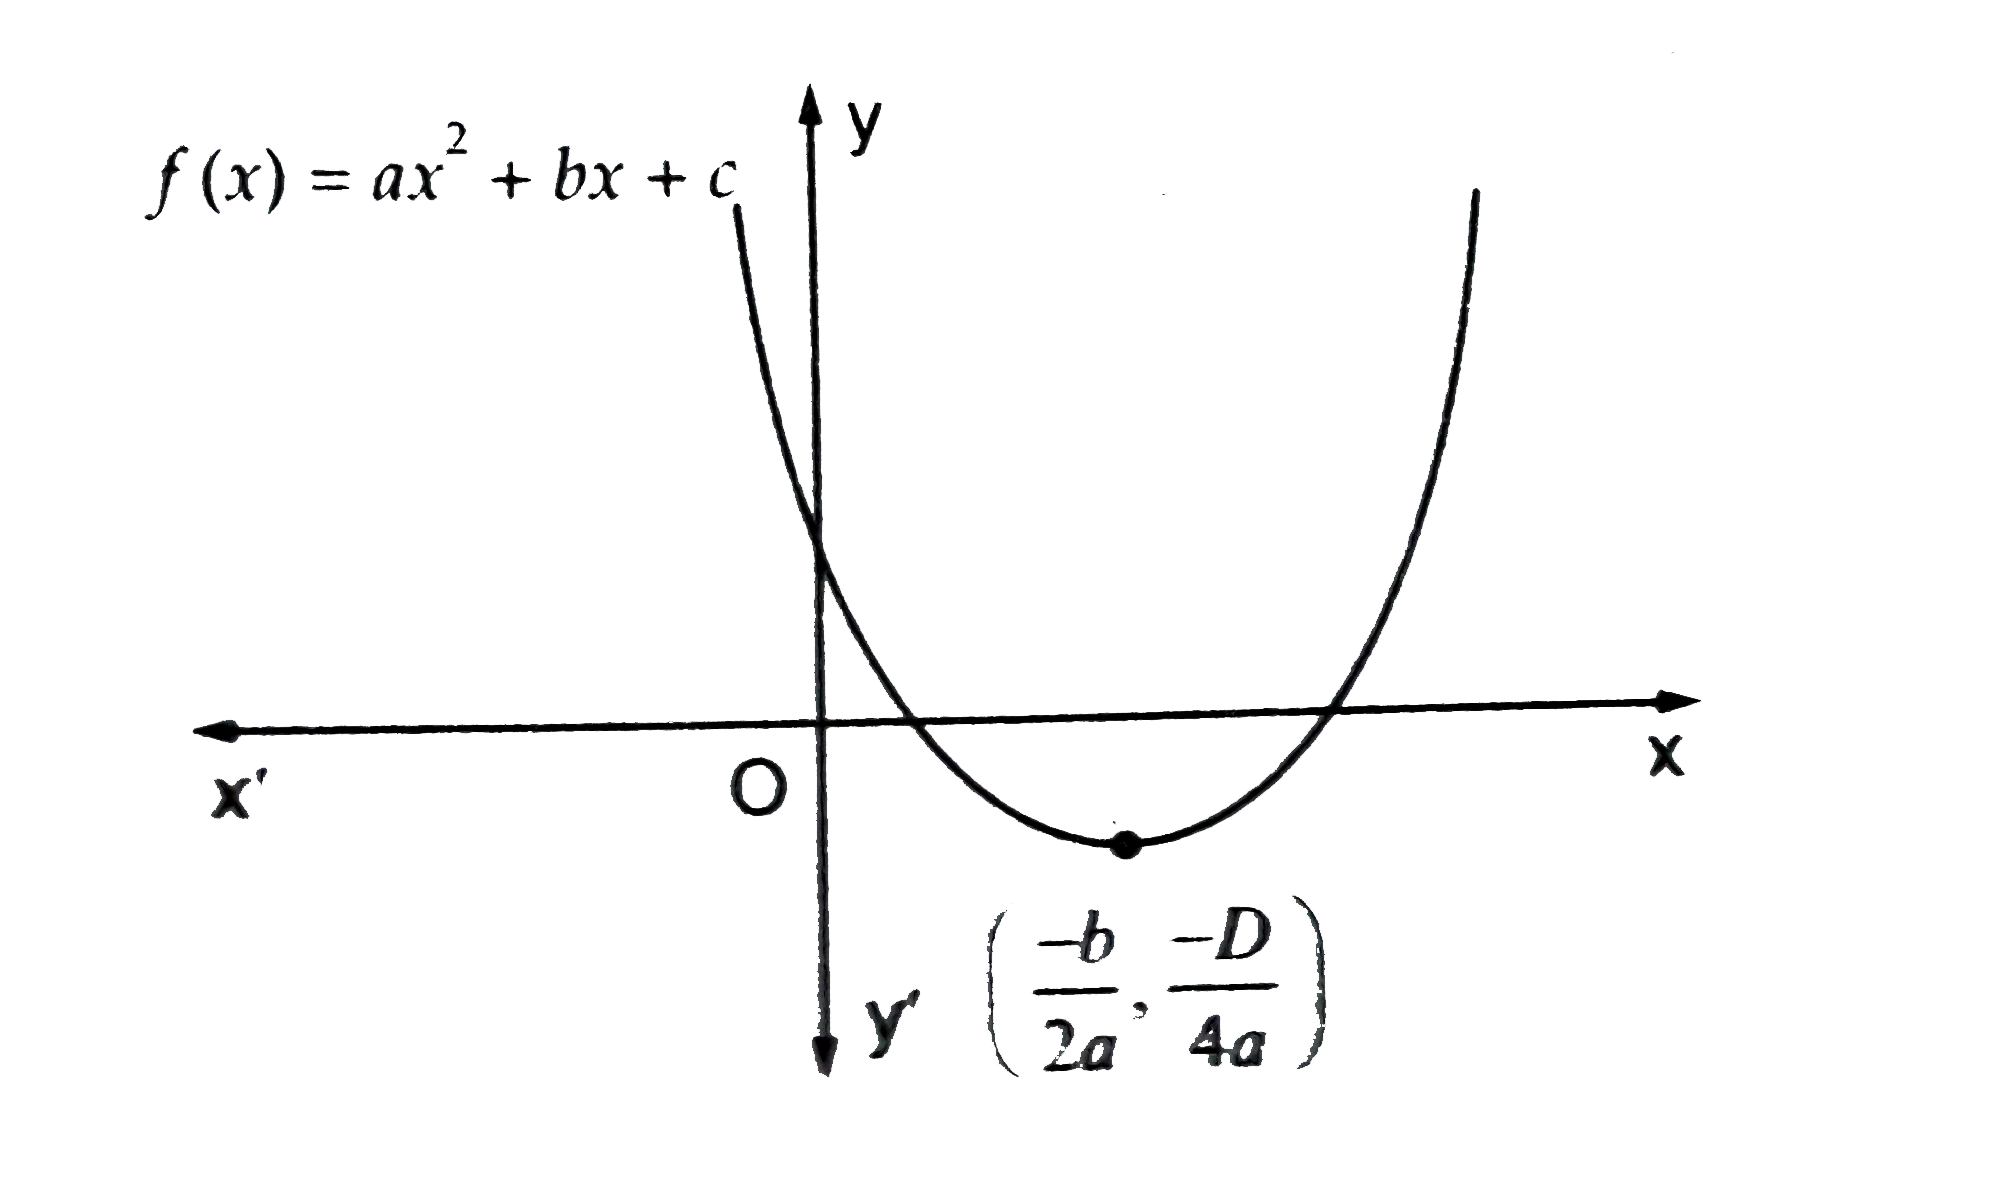 यदि  चित्र  बहुपद     f ( x)   =  a x ^ 2  +  bx  +  c     का  आलेख  दर्शाता है , तो